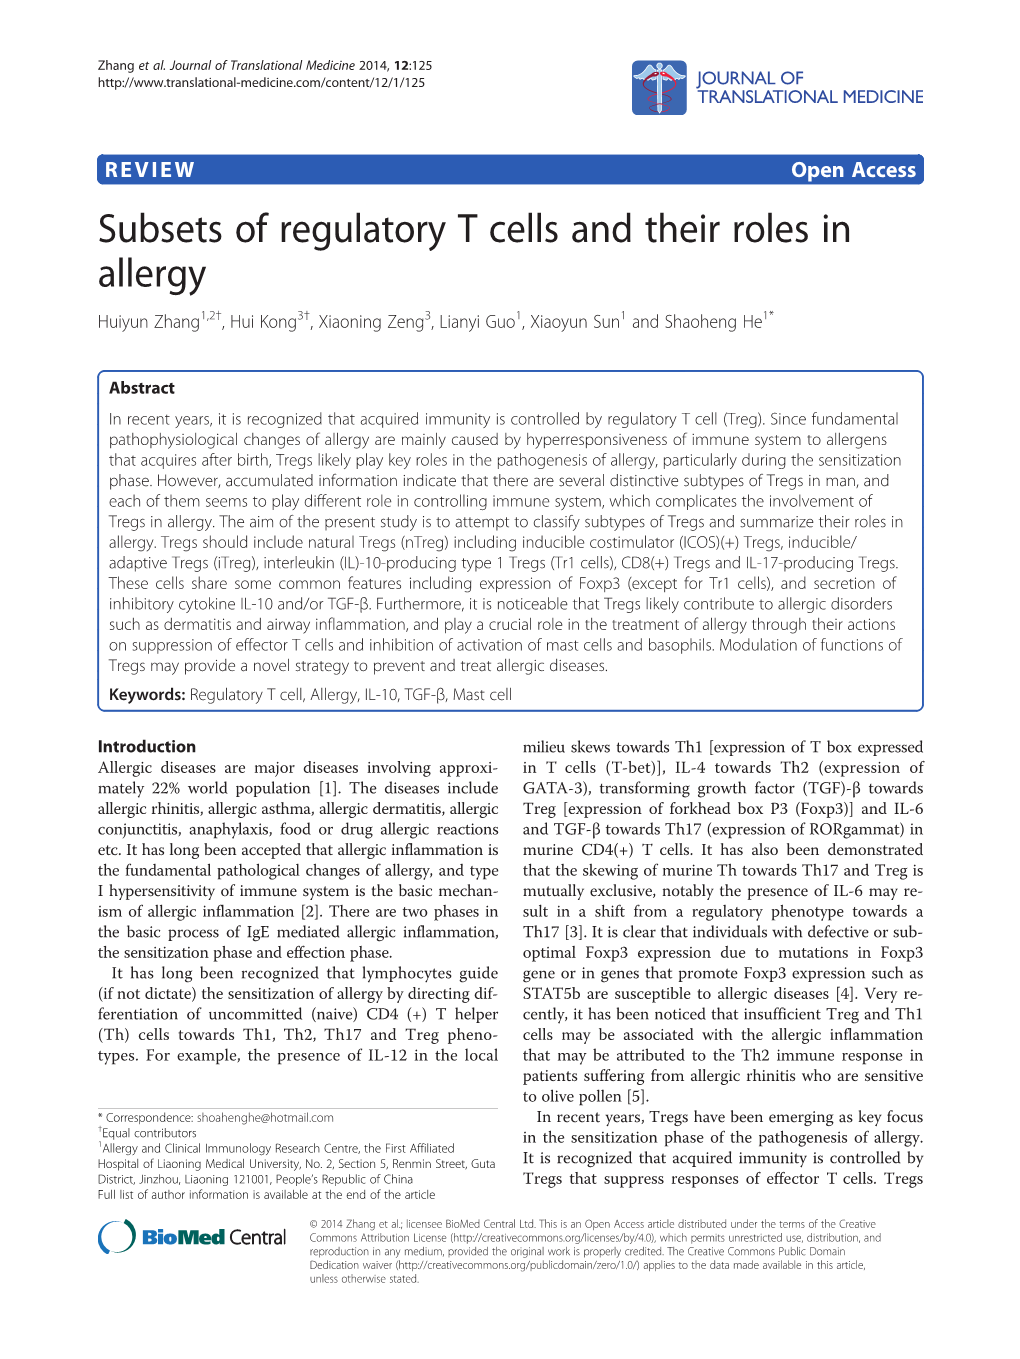 Subsets of Regulatory T Cells and Their Roles in Allergy Huiyun Zhang1,2†, Hui Kong3†, Xiaoning Zeng3, Lianyi Guo1, Xiaoyun Sun1 and Shaoheng He1*